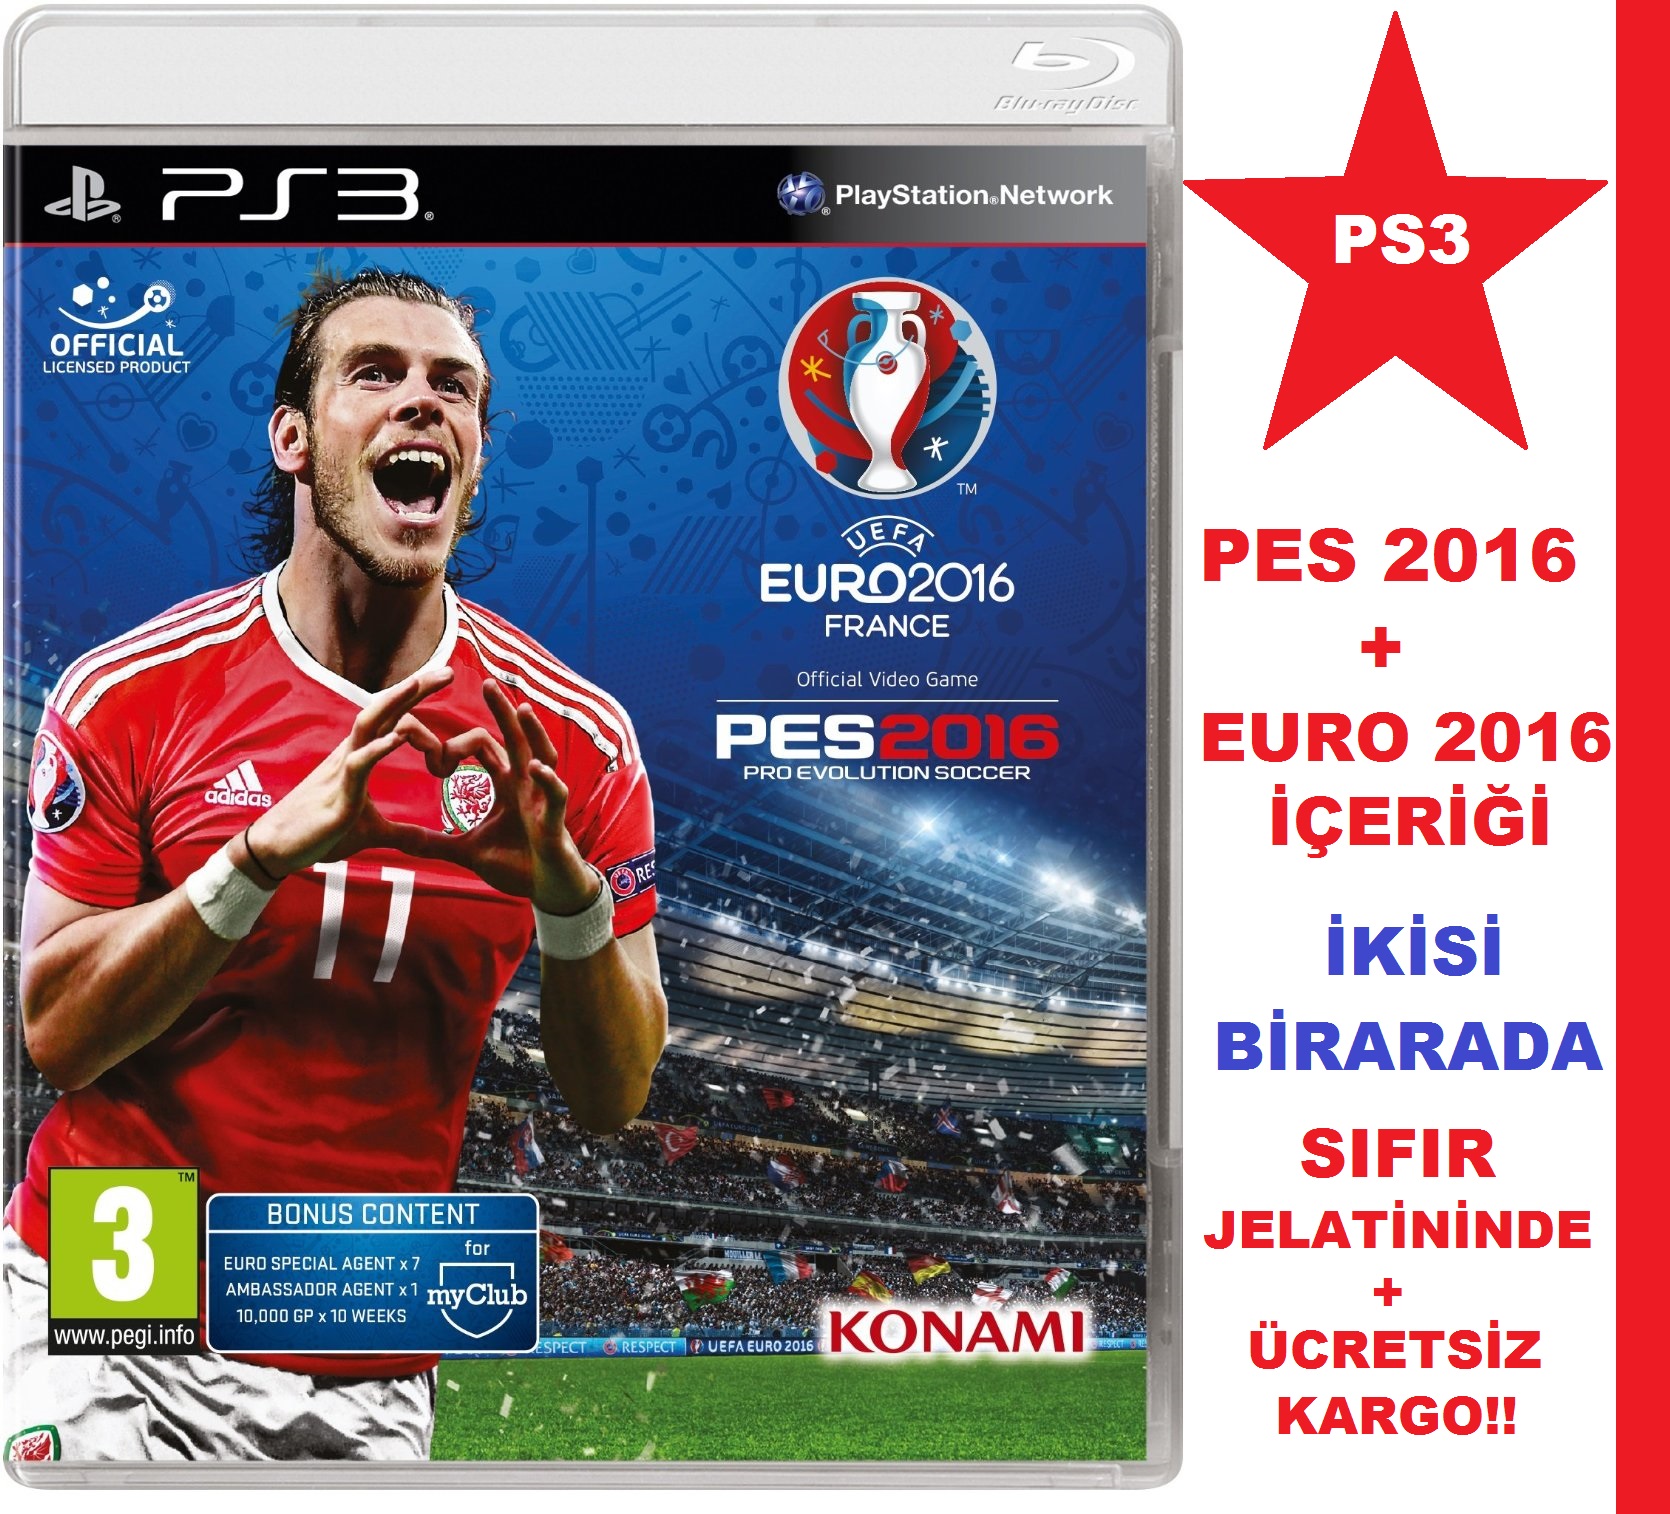 PES 2016 PS3 VE EURO 2016 PS3 TÜRKÇE İKİSİ BİR ARADA